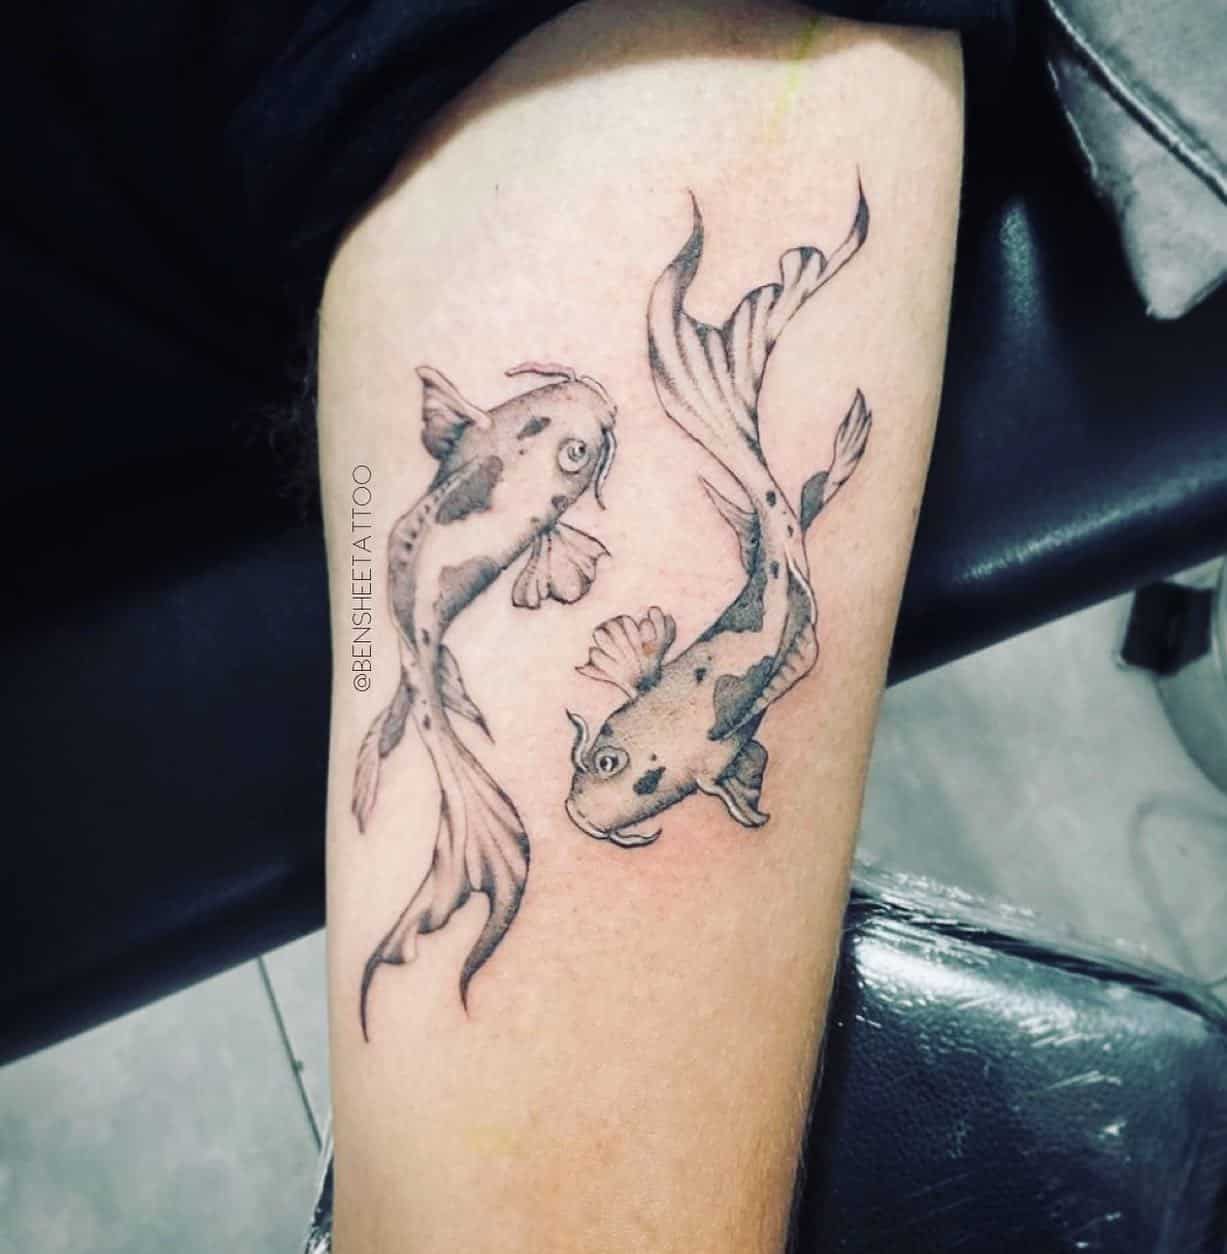 Tatuajes que representan al pez Koi japonés